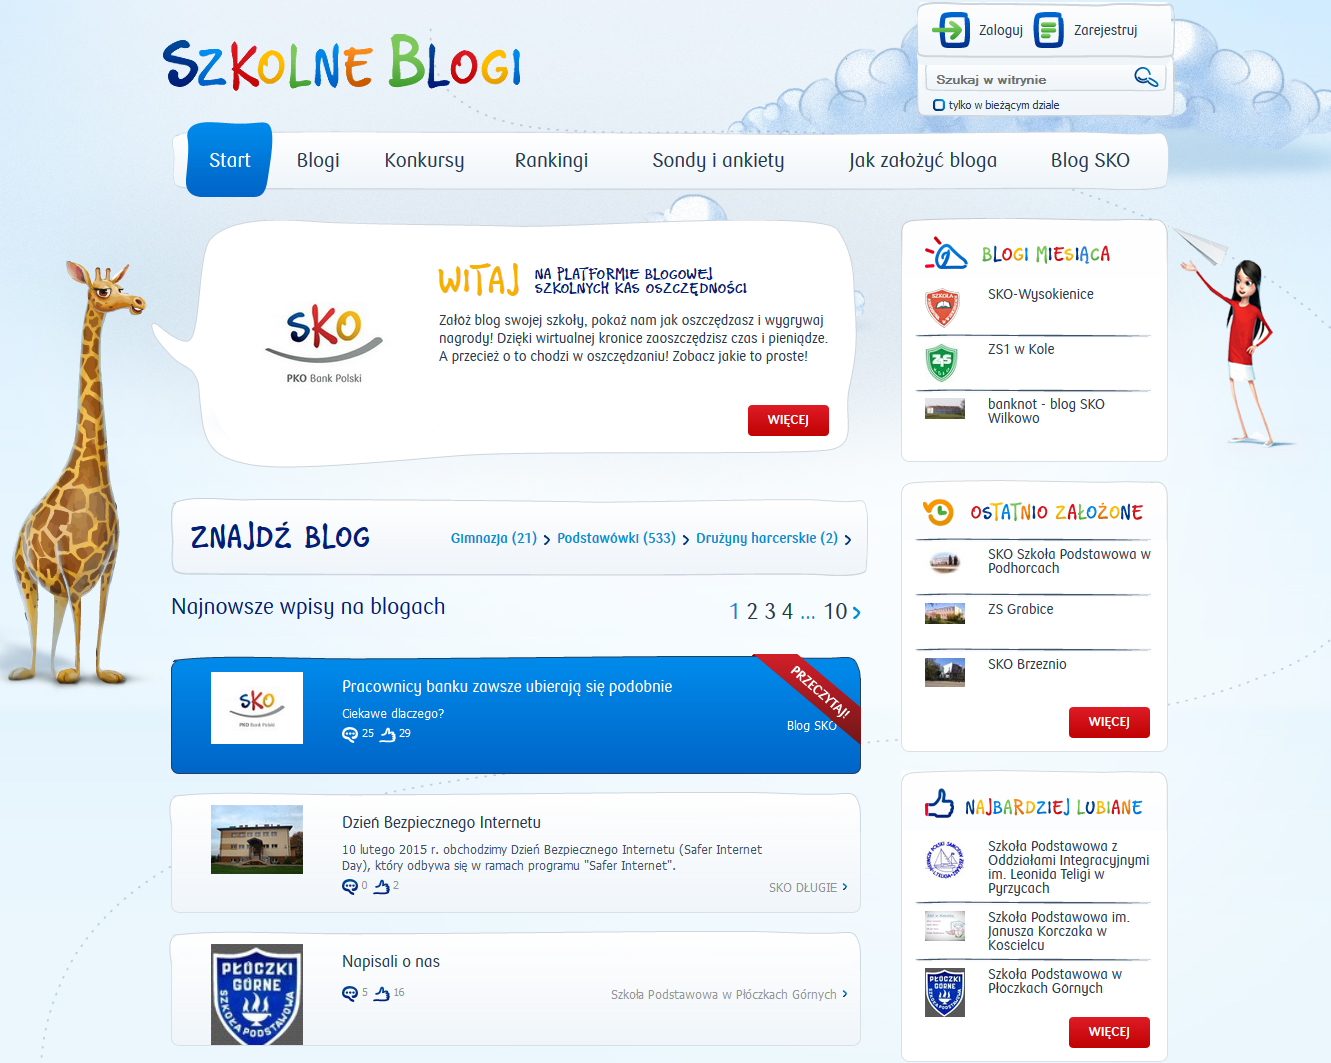 Na platformie blogowej SzkolneBlogi.pl swoje internetowe kroniki prowadzi ponad 550 szkół